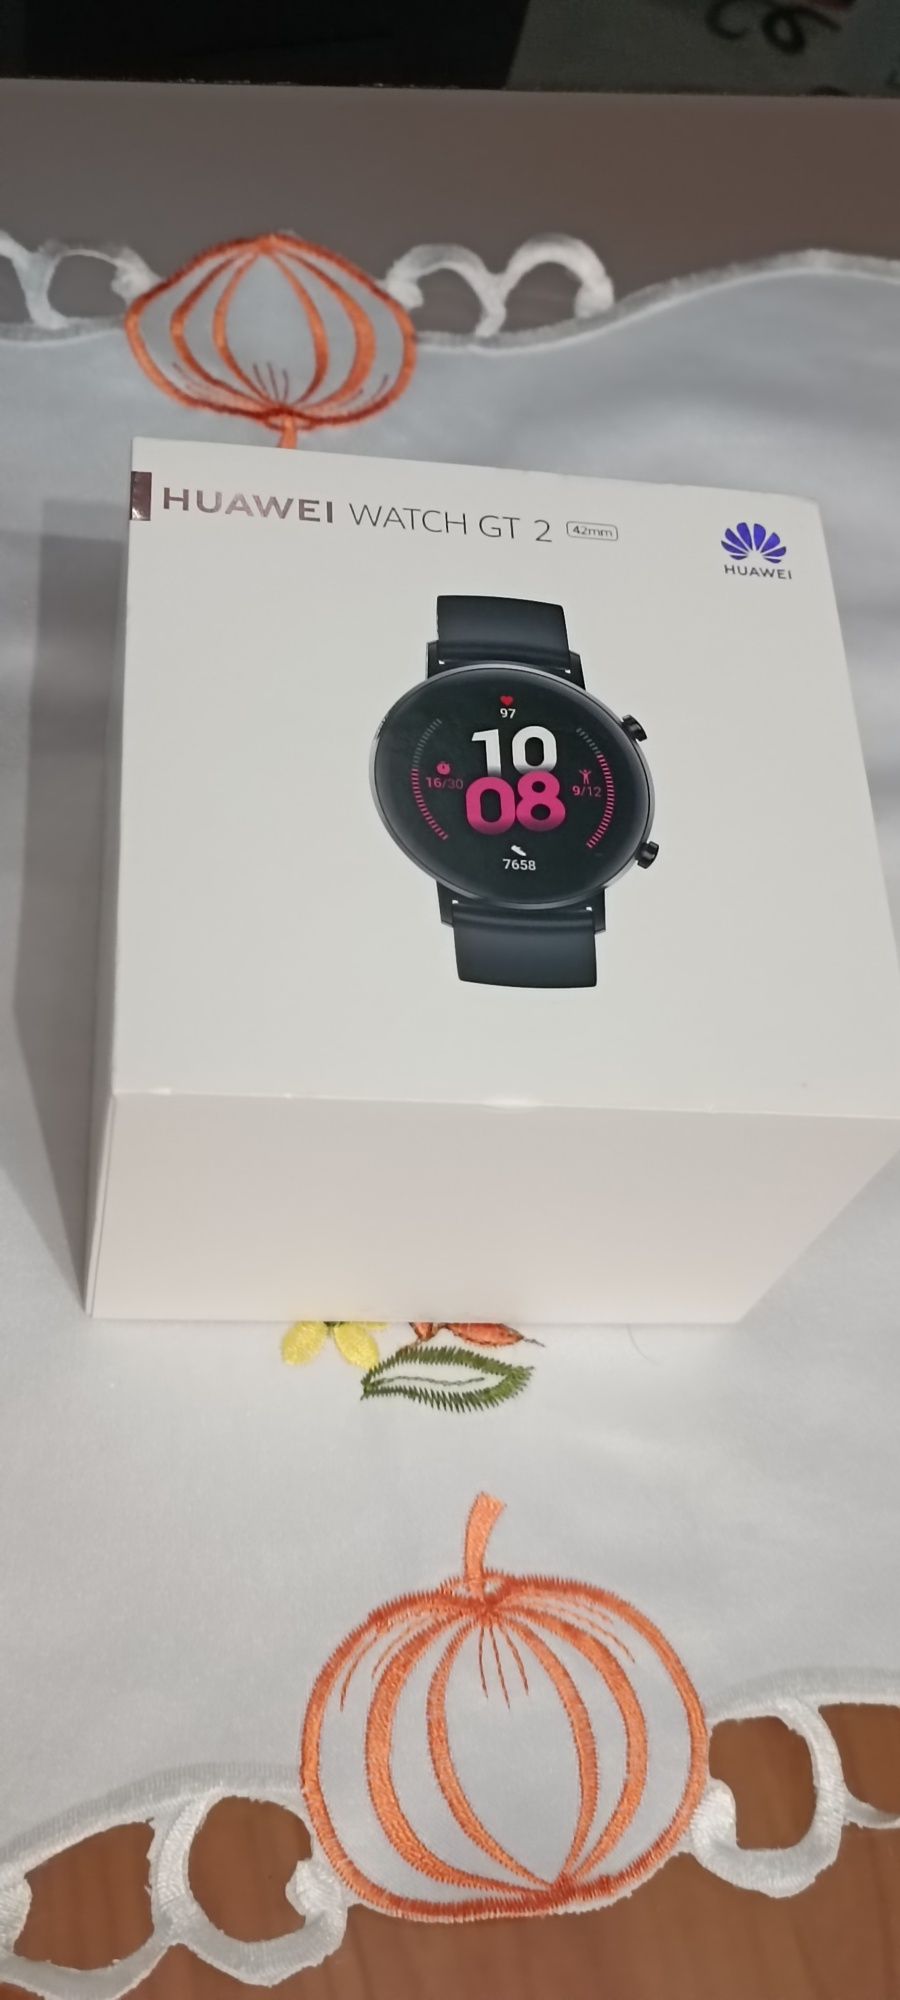 Huawei smartwatch GT2